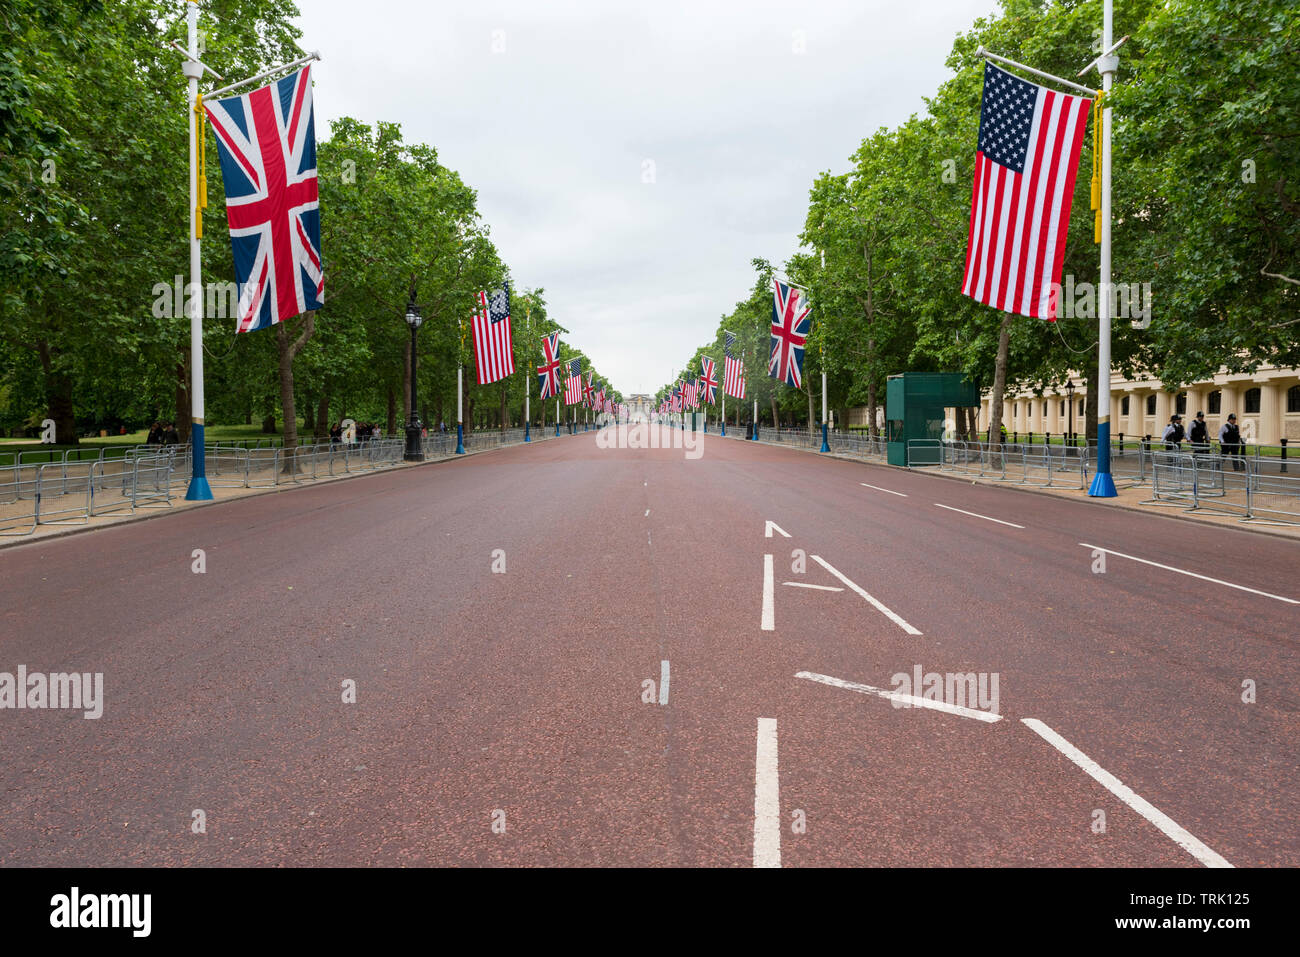 Visualizza in basso al centro commerciale guardando verso Buckingham Palace il giorno dell'Anti-Trump dimostrazioni. Cordoni di polizia mantenuto la zona chiara di dimostranti. Foto Stock